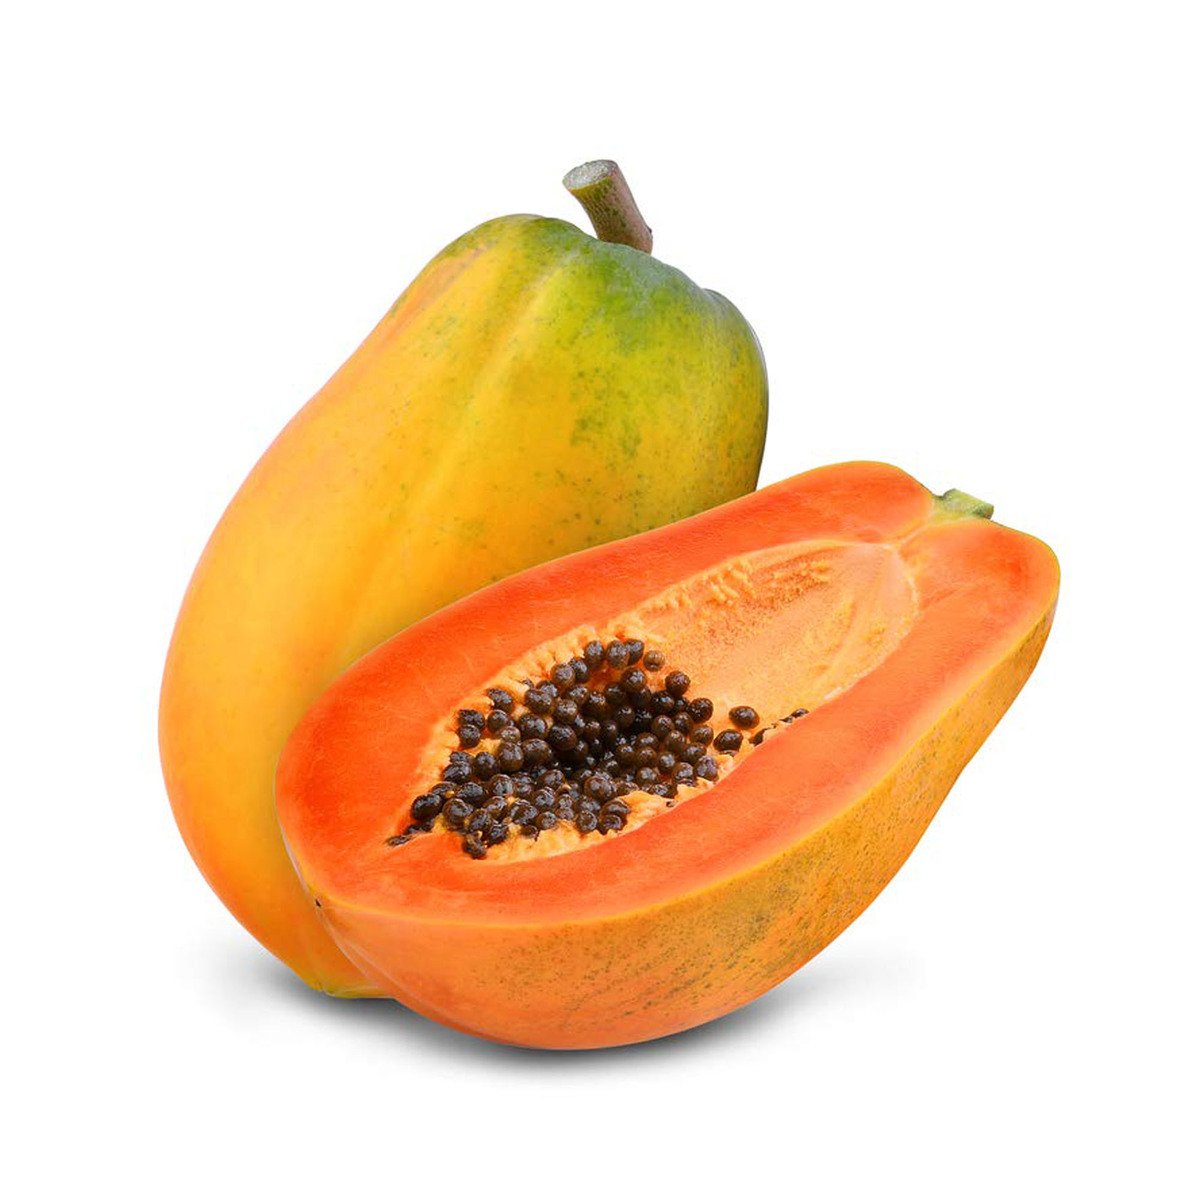 اشتري قم بشراء بابايا طازجة من المزرعة 1 كجم Online at Best Price من الموقع - من لولو هايبر ماركت Papaya في السعودية